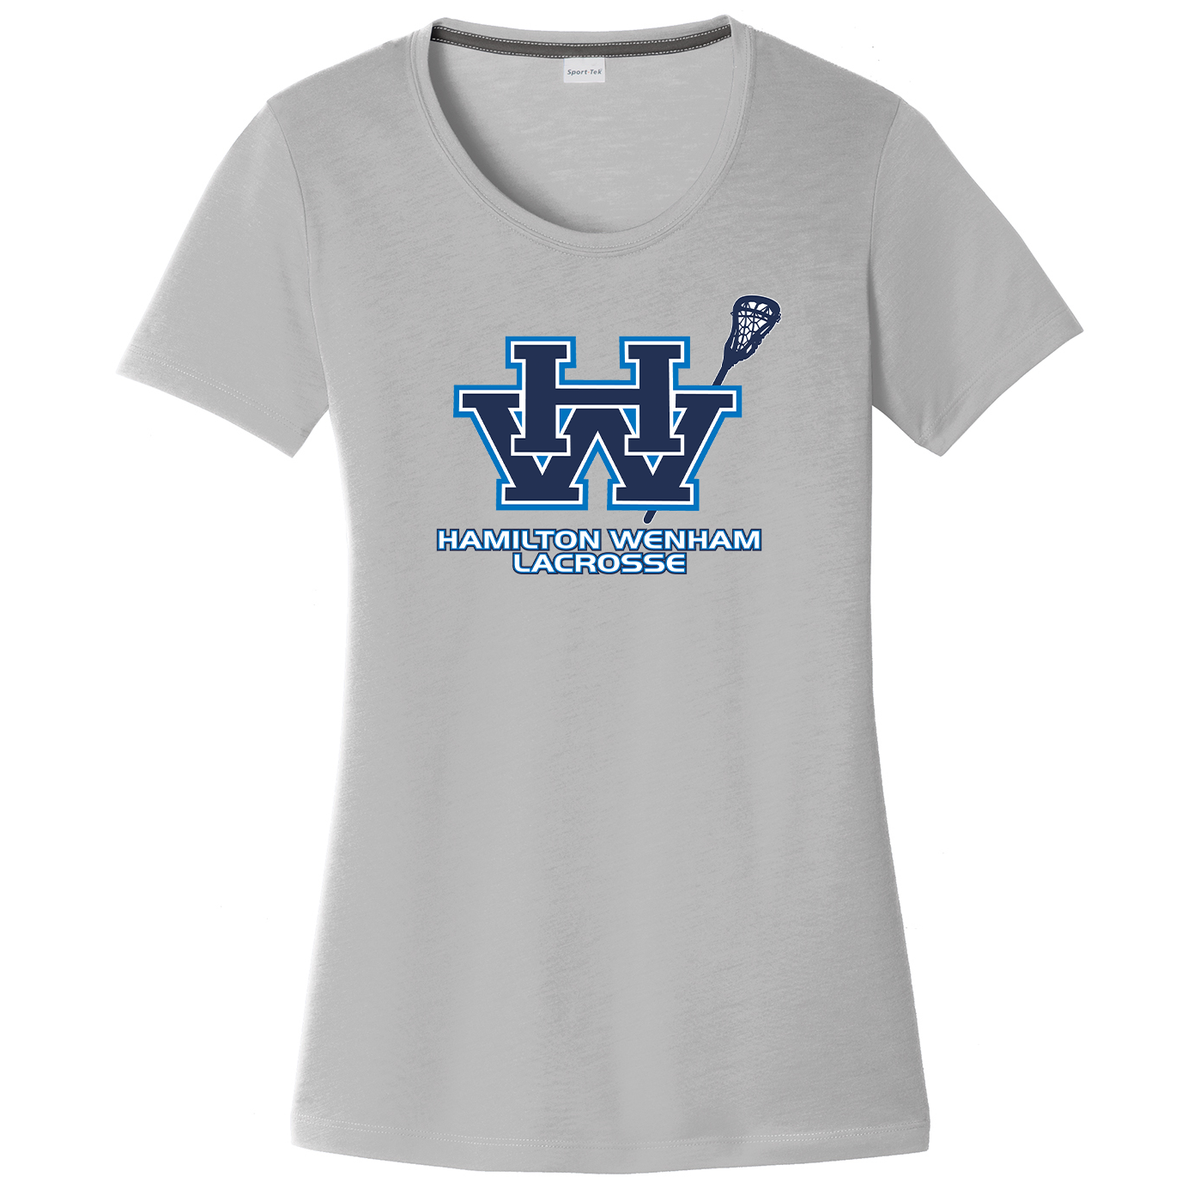 Hamilton Wenham Lacrosse - Women's CottonTouch Performance T-Shirt